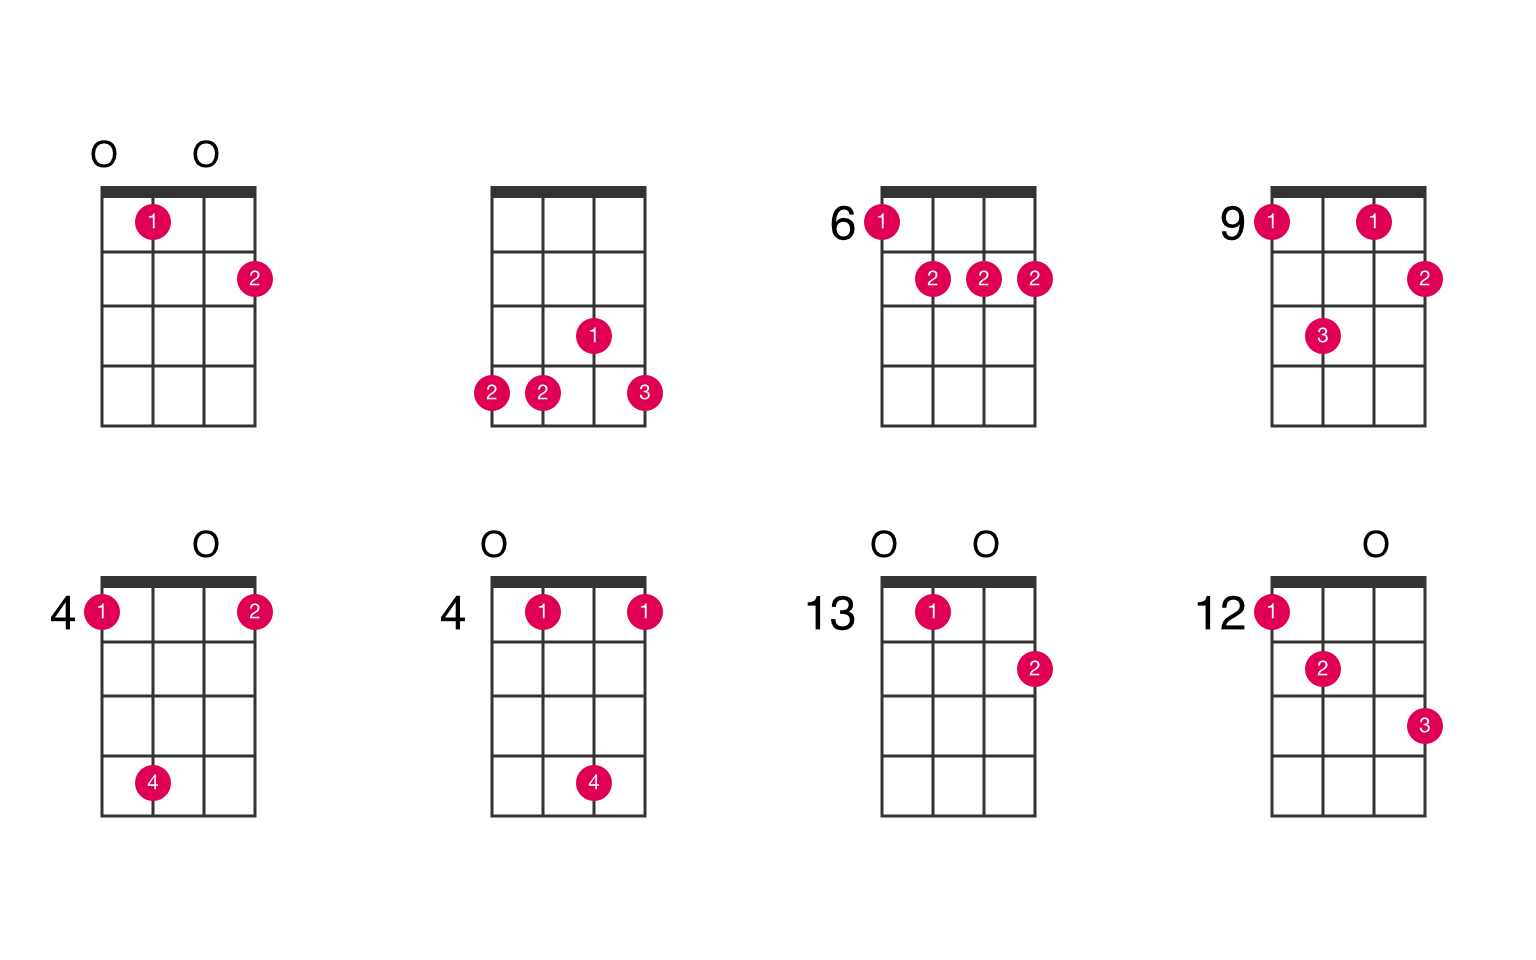 C-sharp minor 7th flat 5 ukulele chord - UkeLib Chords